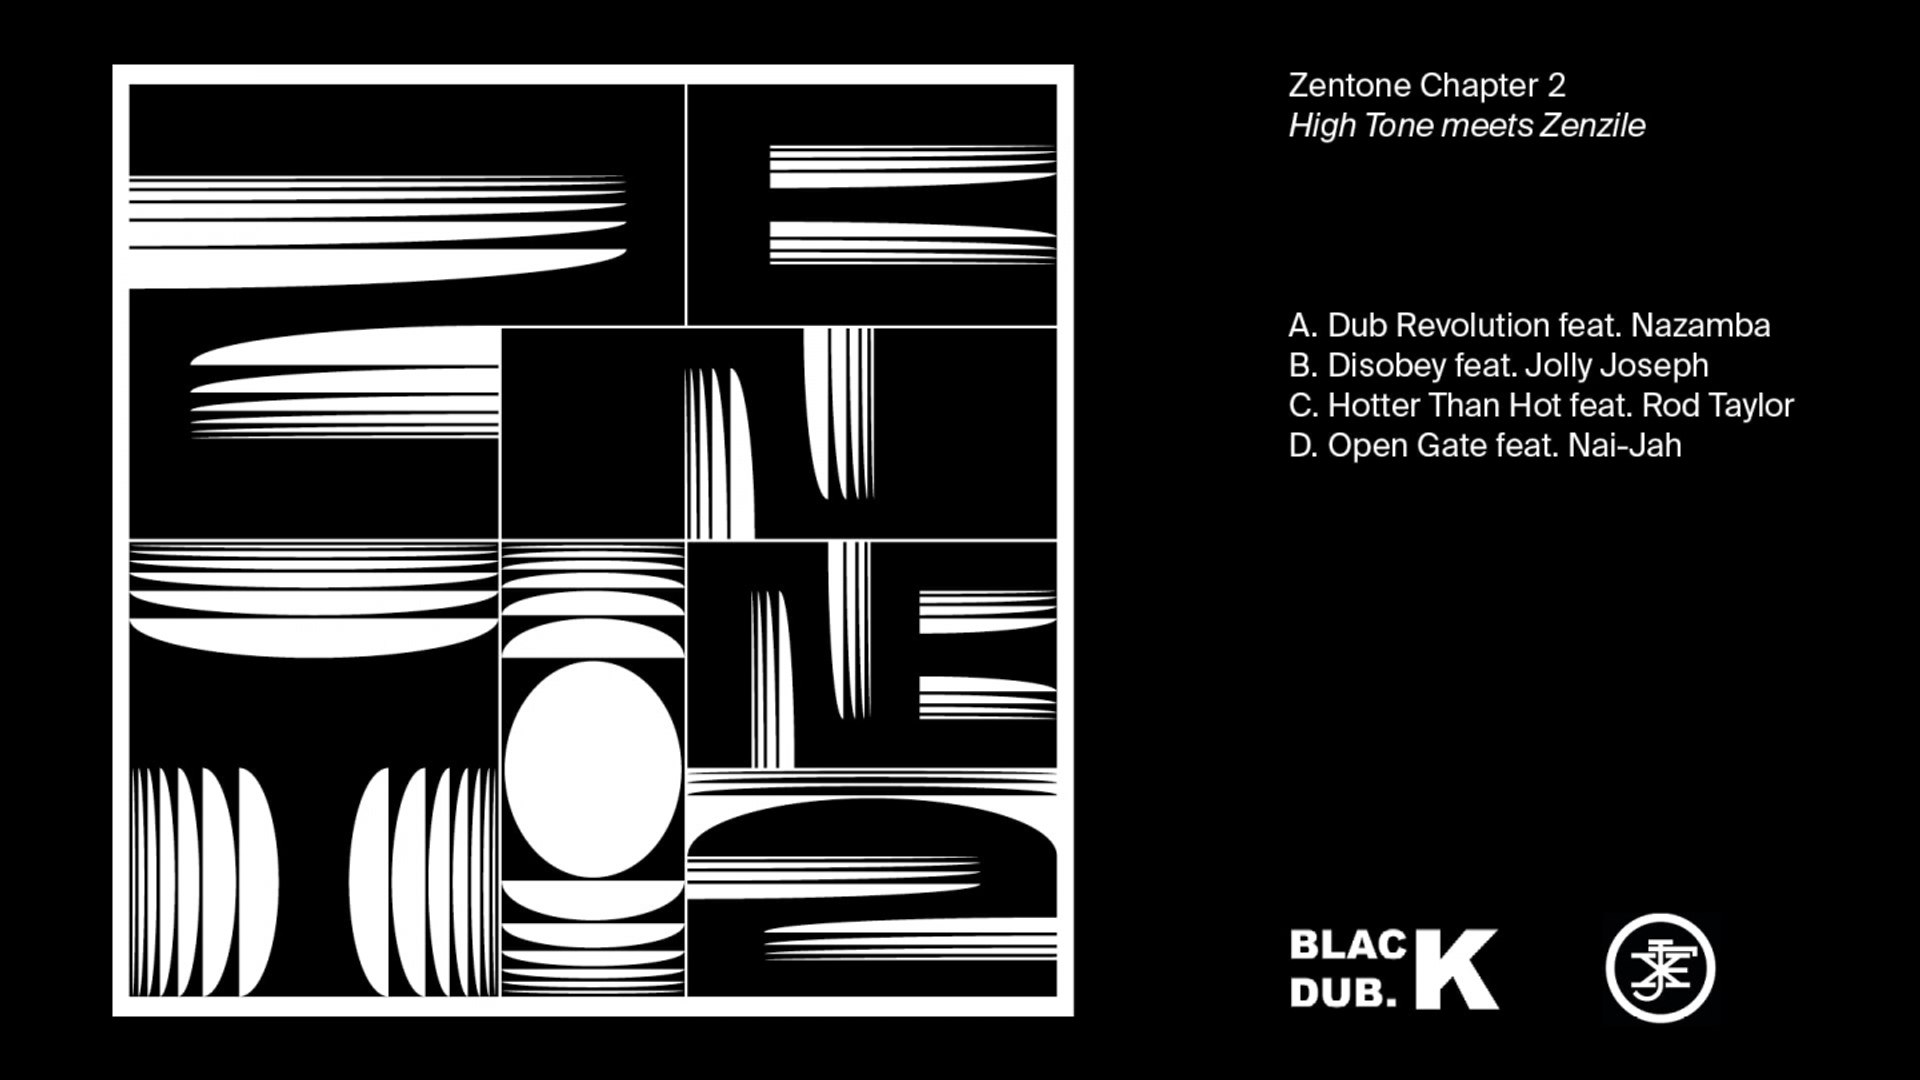 Zenzile Zentone album. Higher Tone. High Tone ‎– Remixed - Dub to Dub 2 LP. Zenzile meet Cello album.